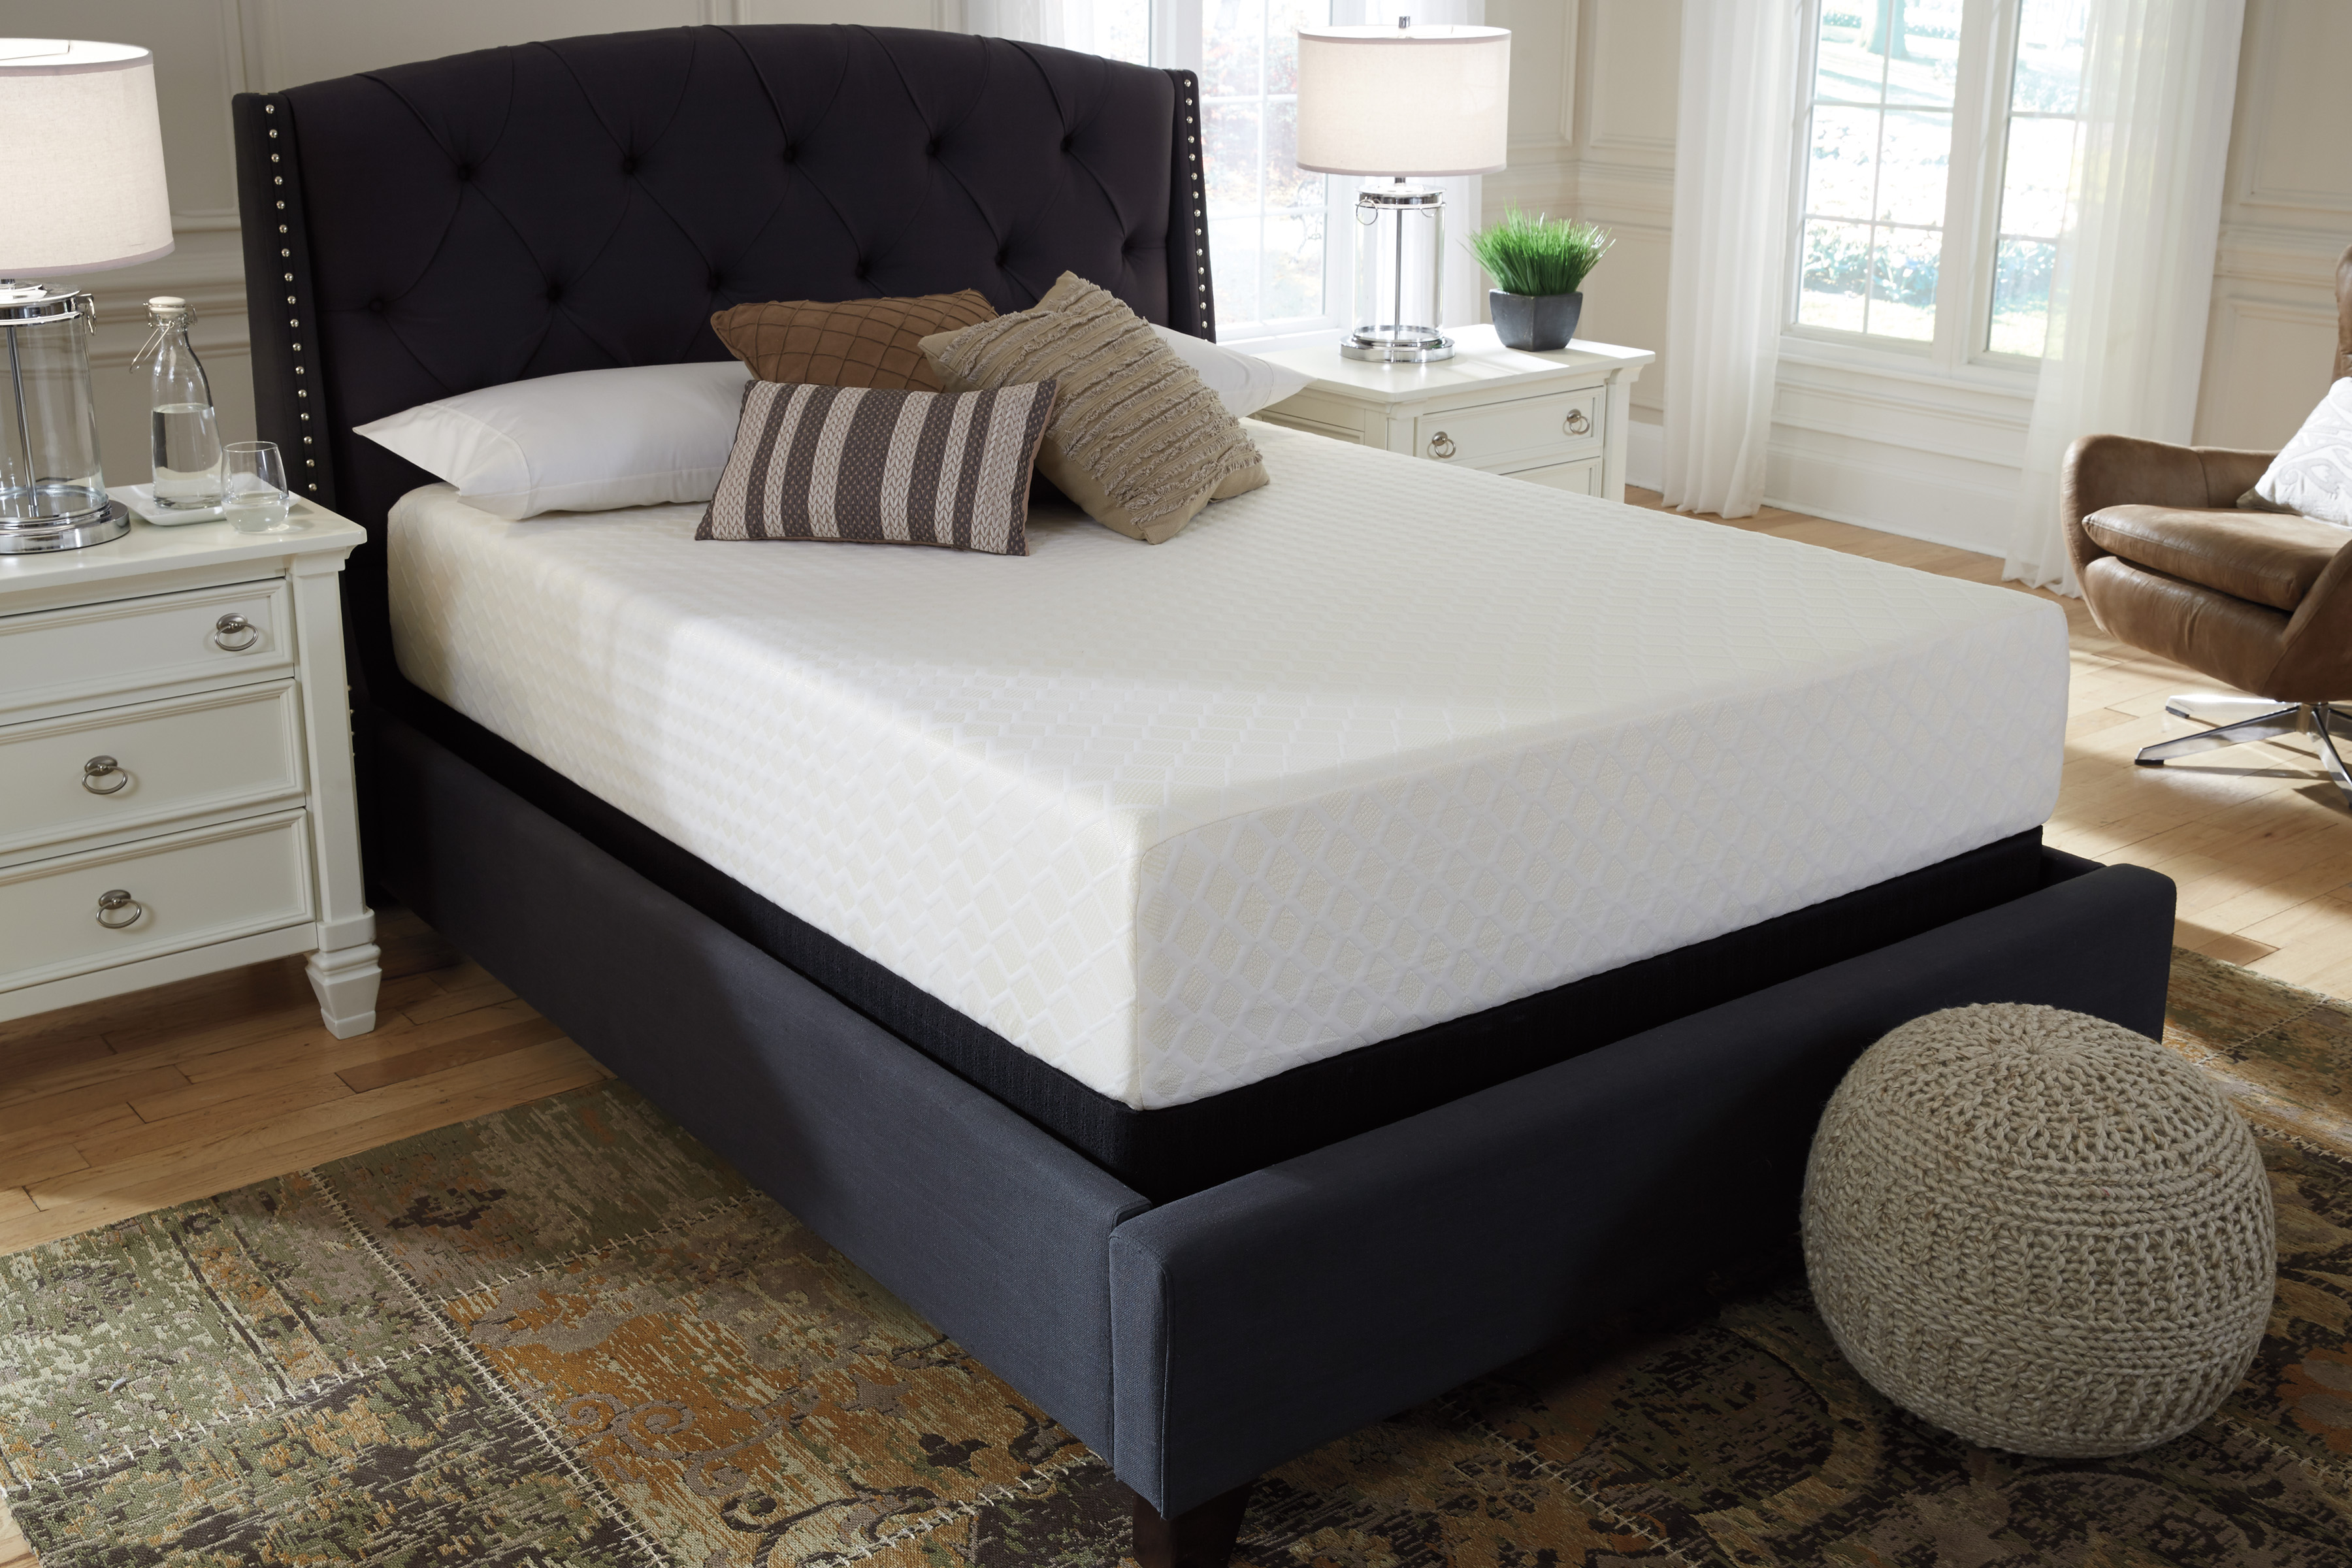 foam wedge for bedroom mattress